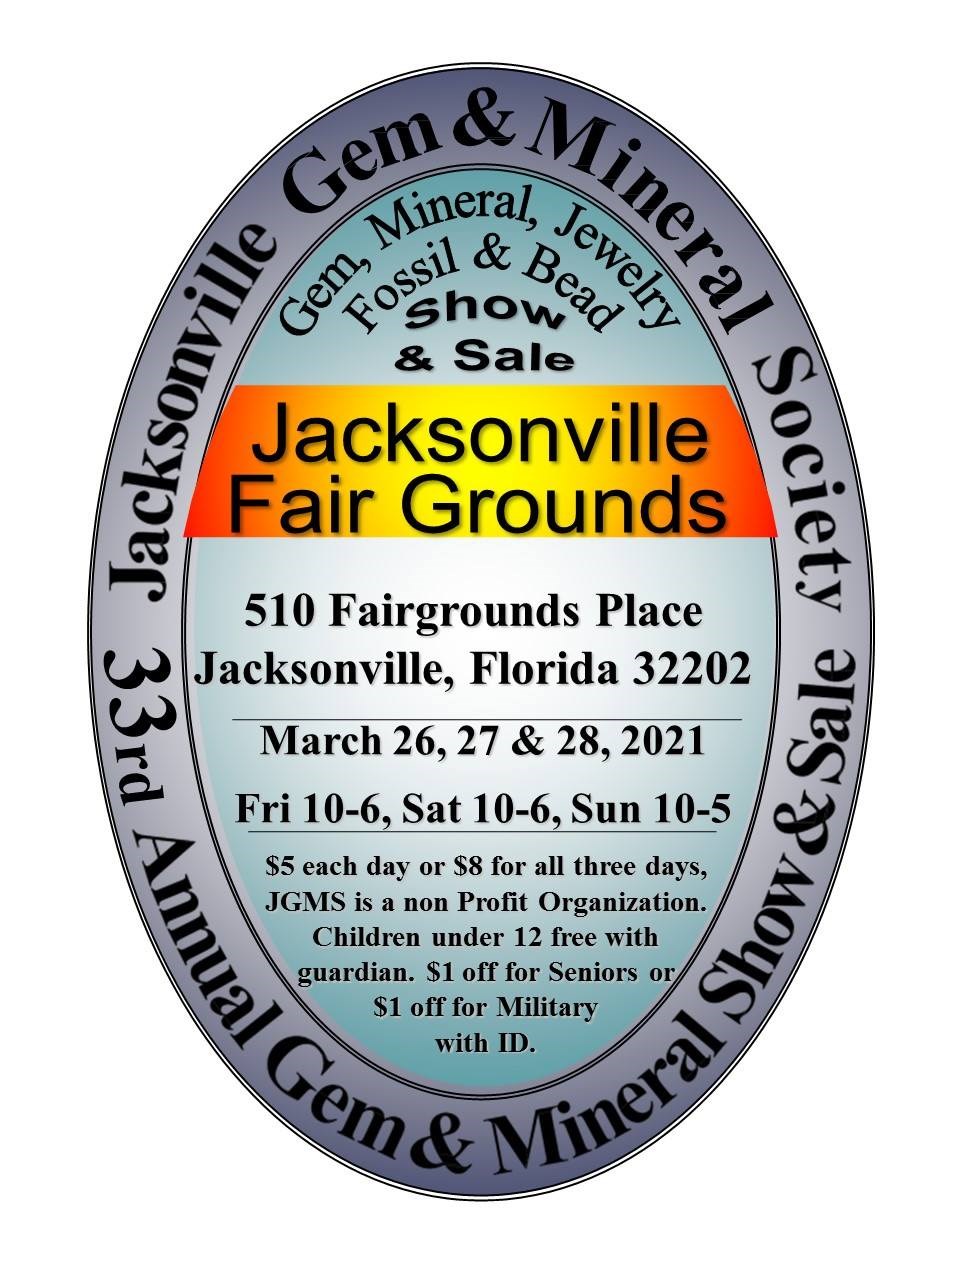 Jacksonville Gem & Mineral Society 33a Exposición y venta anual de gemas y minerales 26-28 de marzo